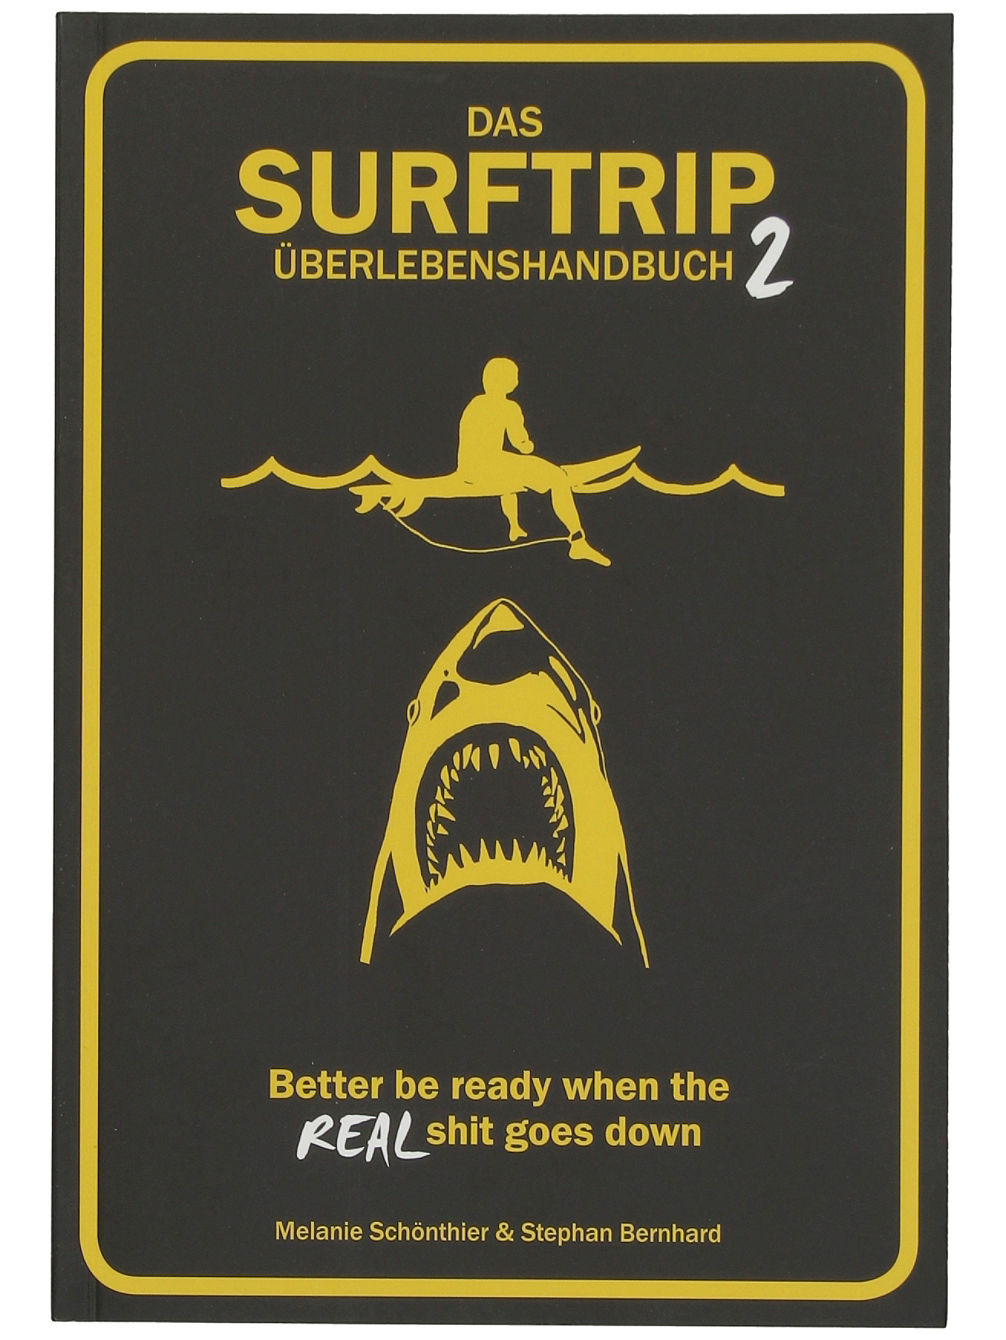 Surftrip-Handbuch Teil 2 DE